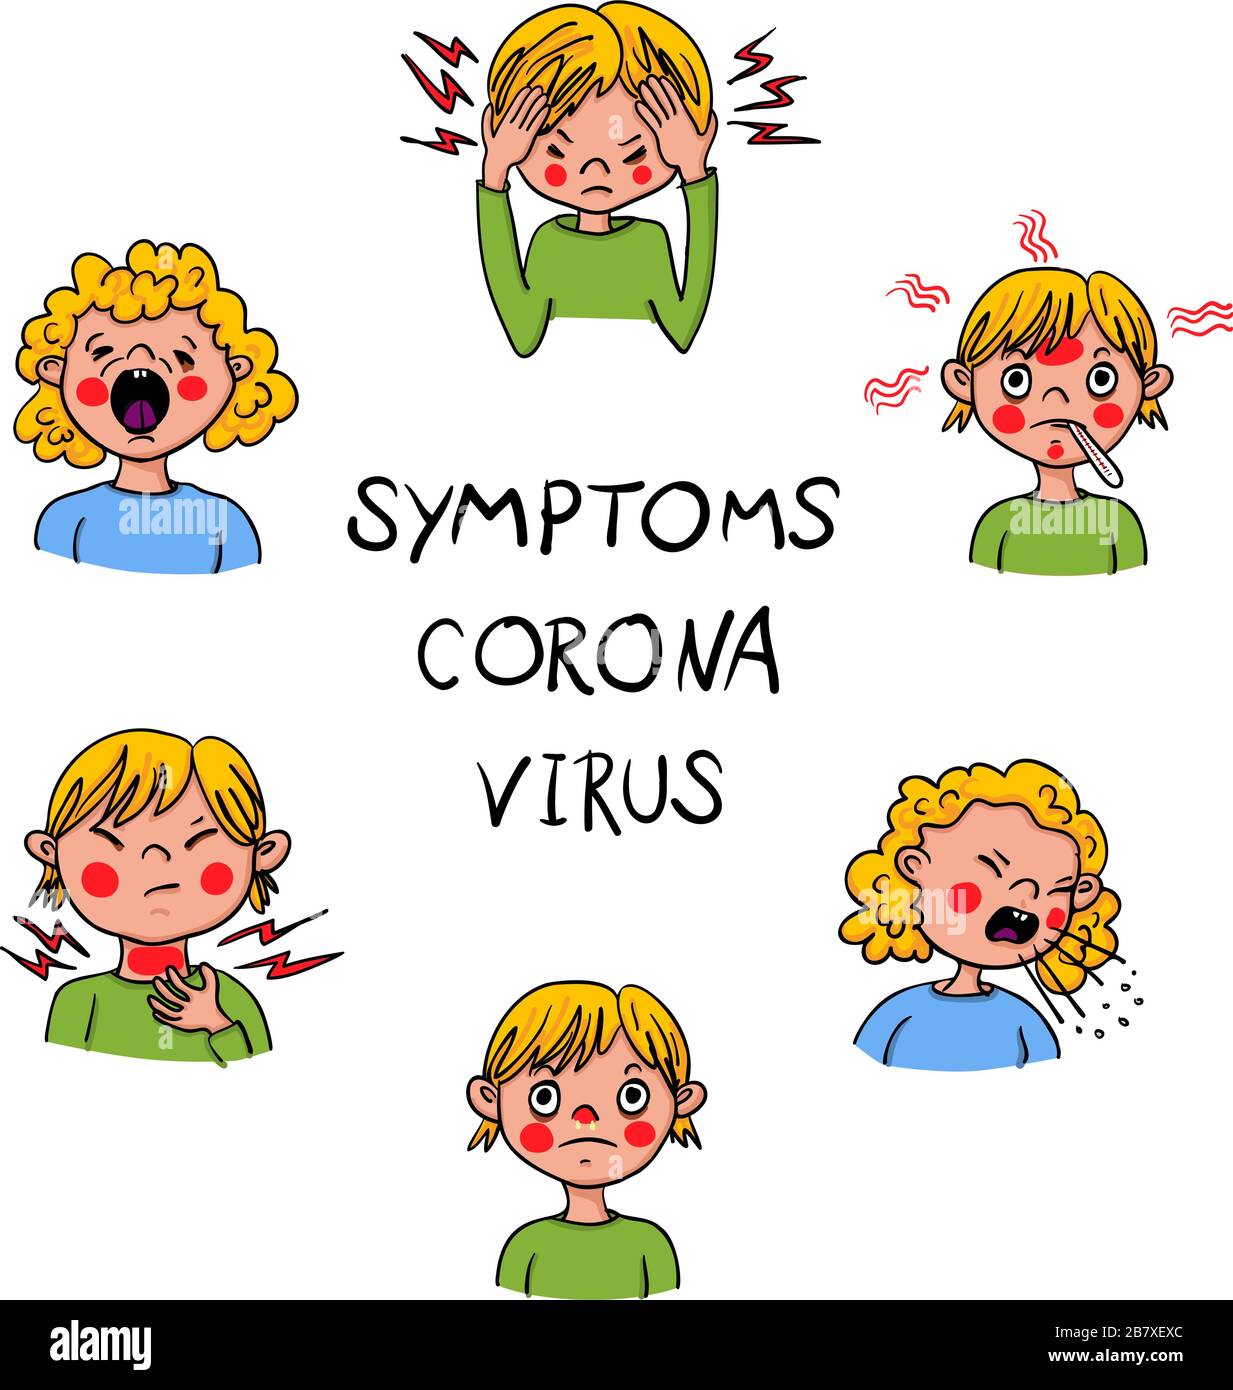 Che mostra i sintomi di Covid-19 per i bambini come febbre, tosse, cefalea-coronavirus-SARS-cov-2- illustrazione del vettore disegnata a mano Illustrazione Vettoriale